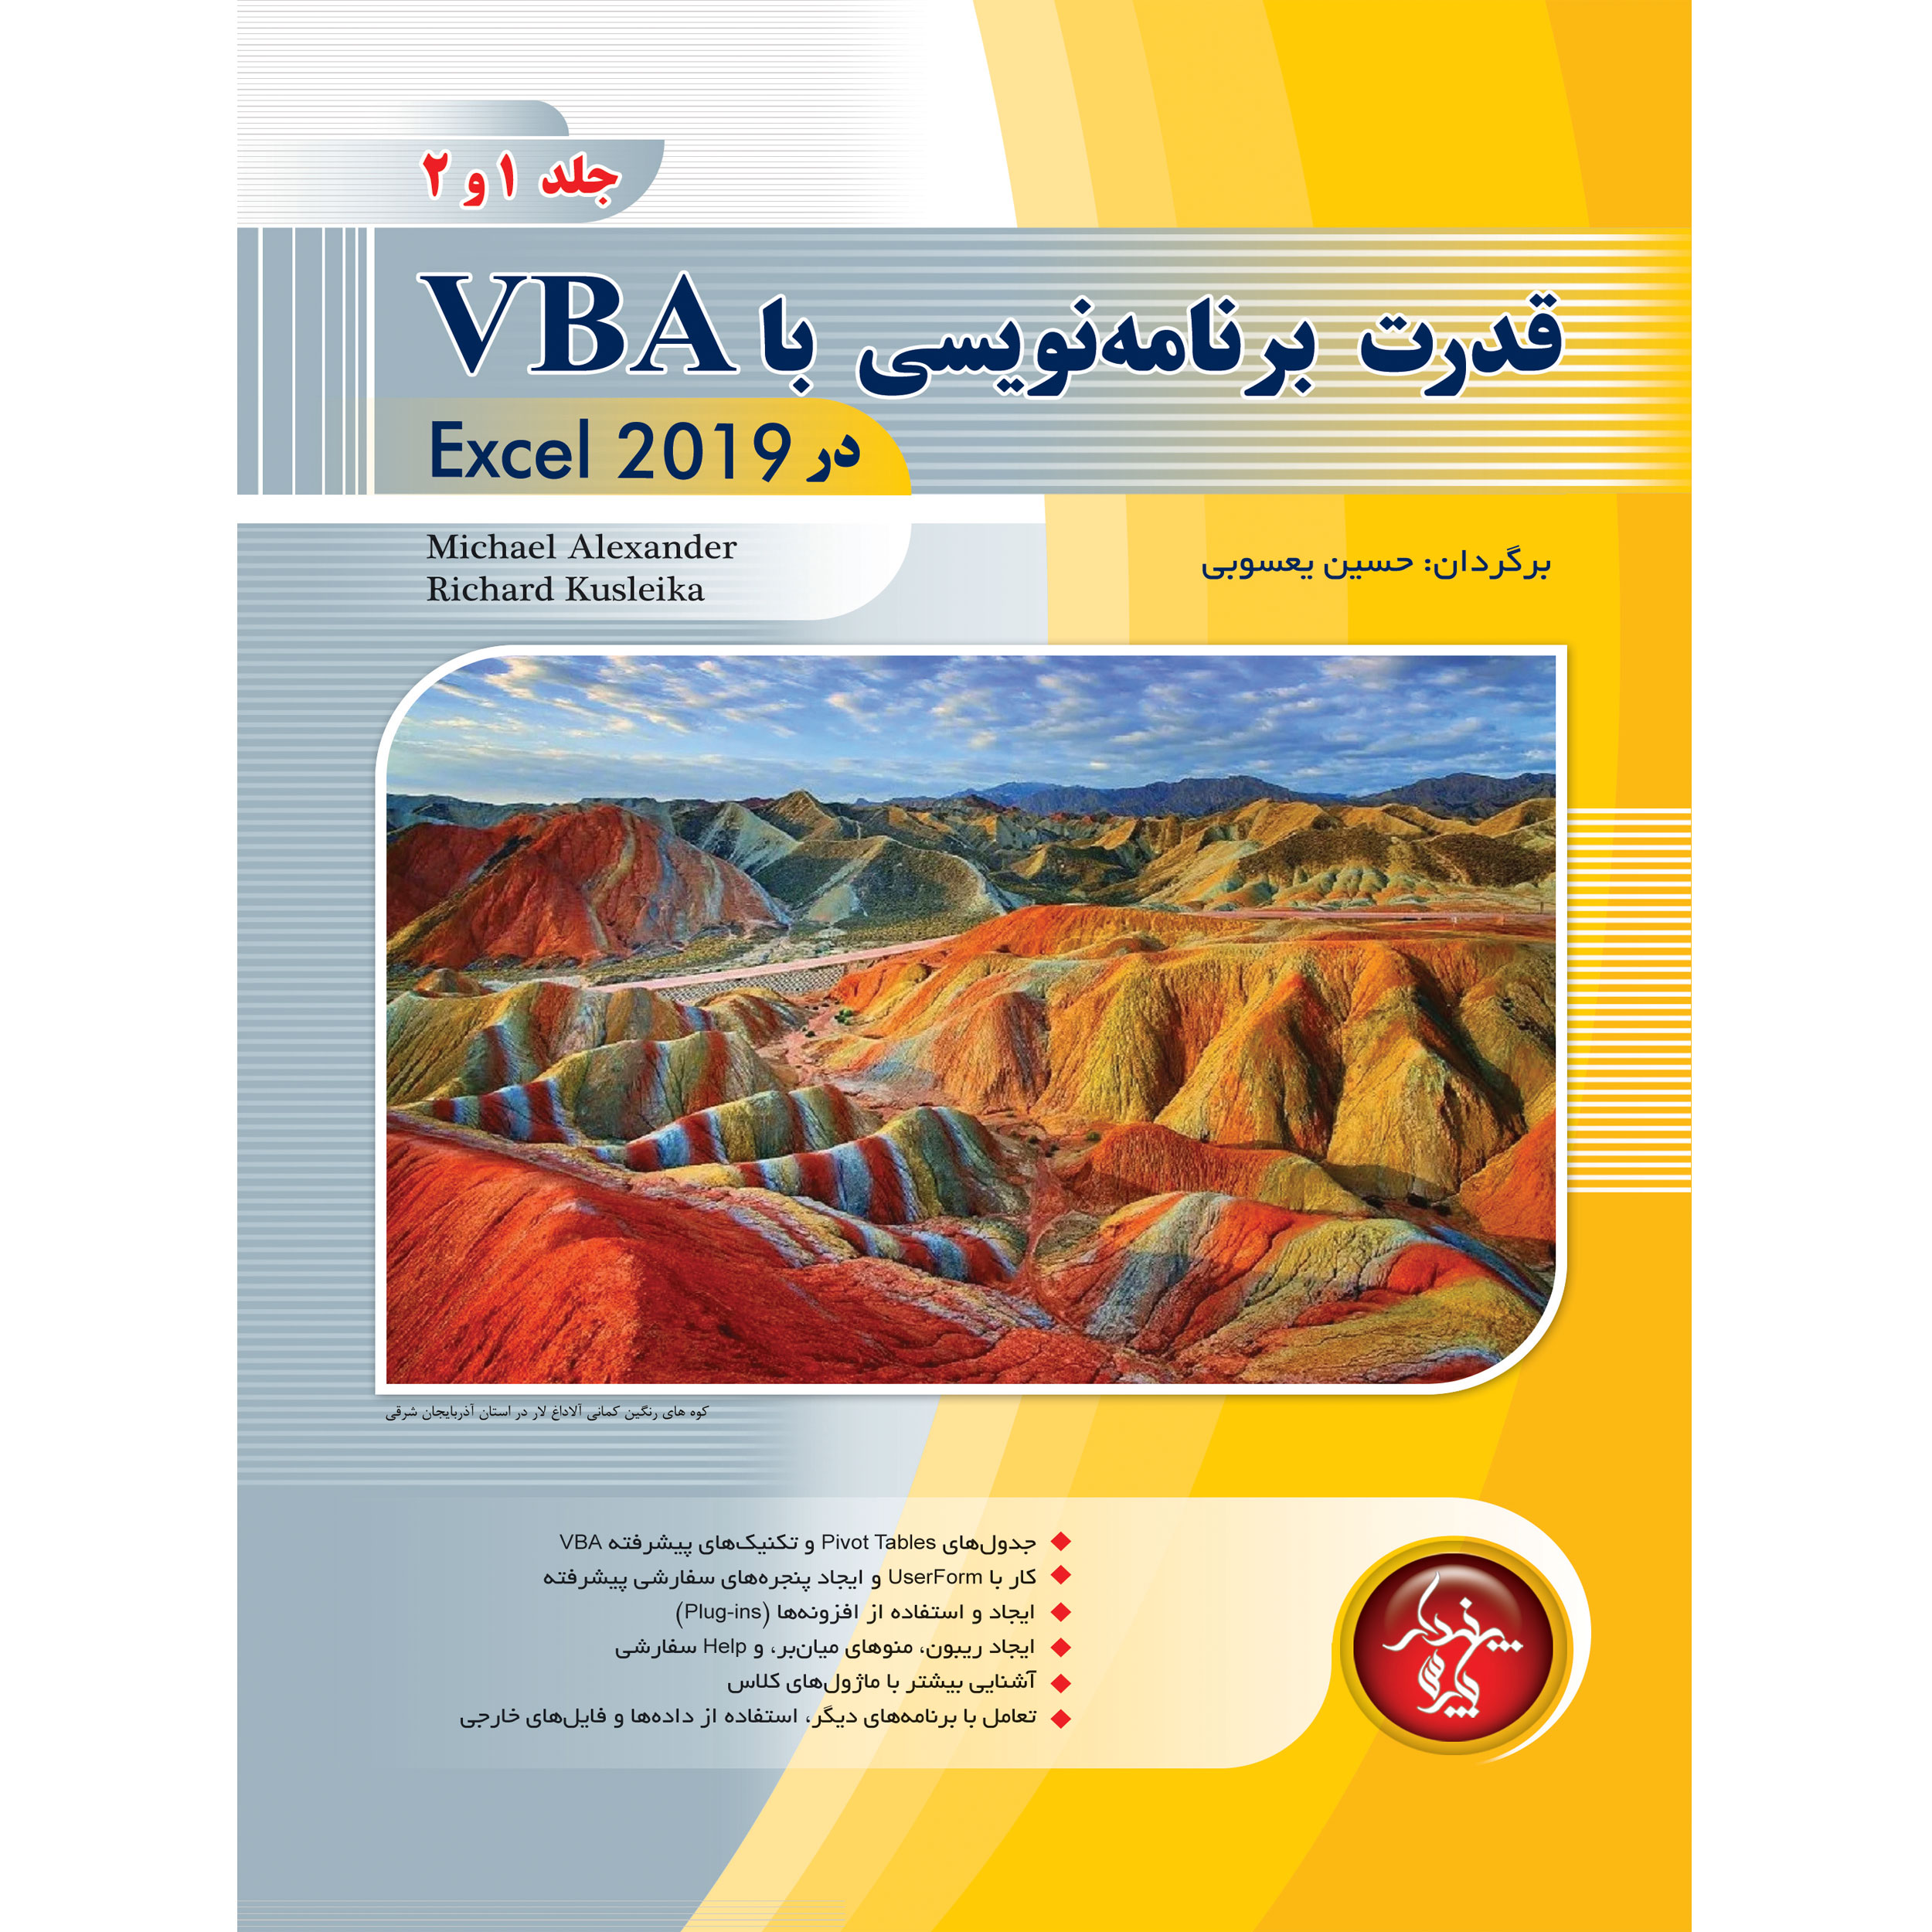 کتاب قدرت برنامه نويسي با VBA در Excel 2019 اثر حسین یعسوبی انتشارات پندار پارس جلد 1 و 2